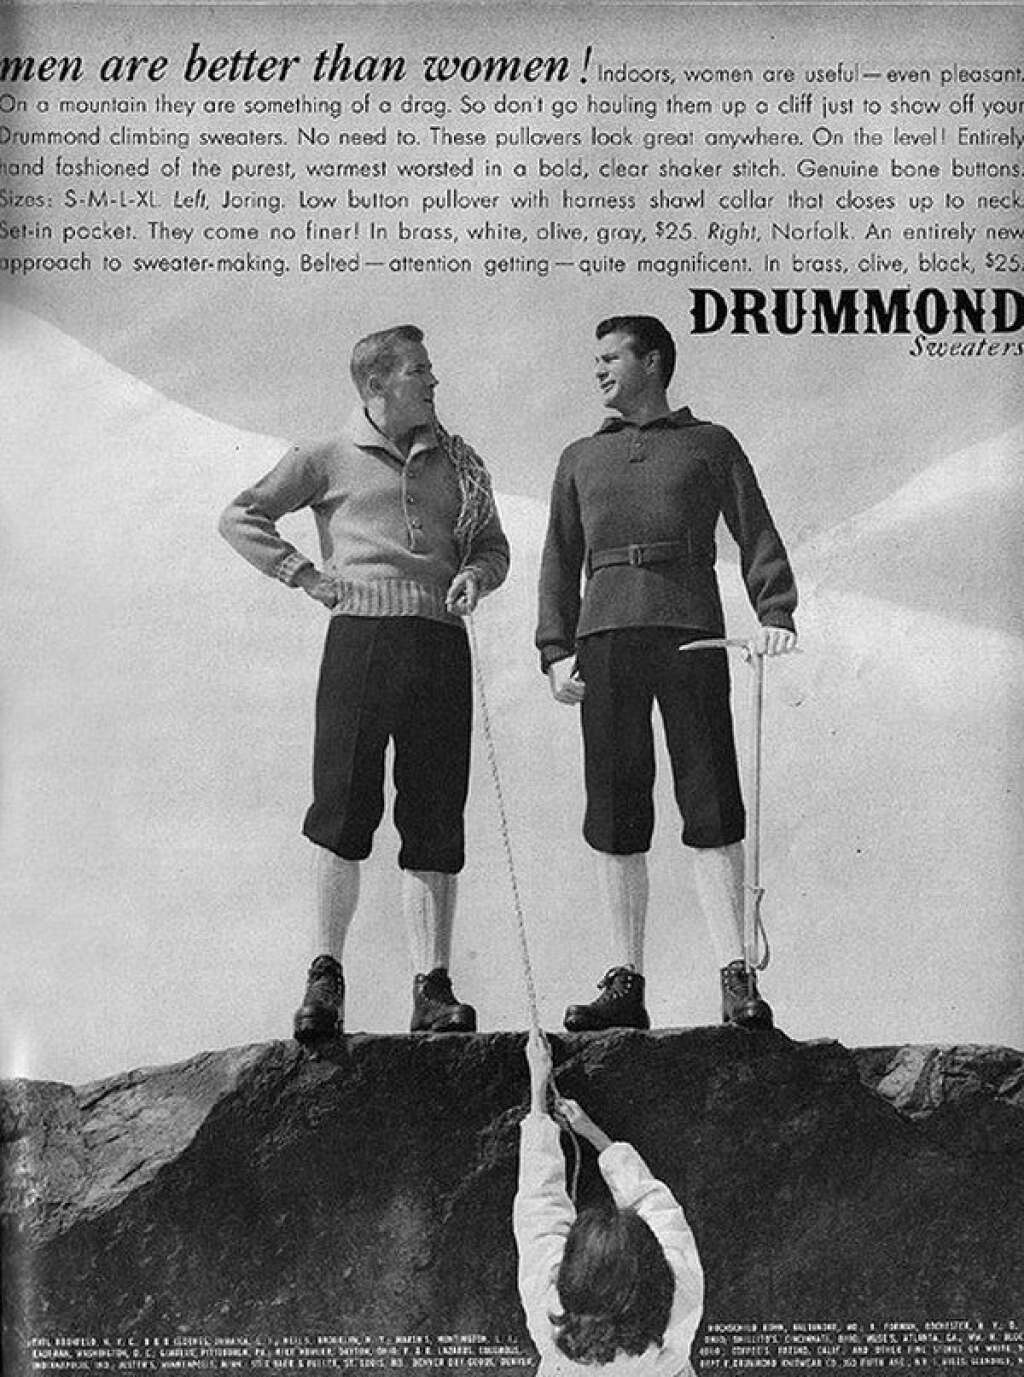 Drummond - "Les hommes sont meilleurs que les femmes" ! clame cette marque de pulls. Et de détailler les raisons : "à l'intérieur, les femmes sont utiles - et même plaisantes. Mais en montagne, elles sont tellement ennuyantes ! Donc pas la peine d'aller en montagne juste pour leur montrer vos pulls. Ils seront beaux partout".